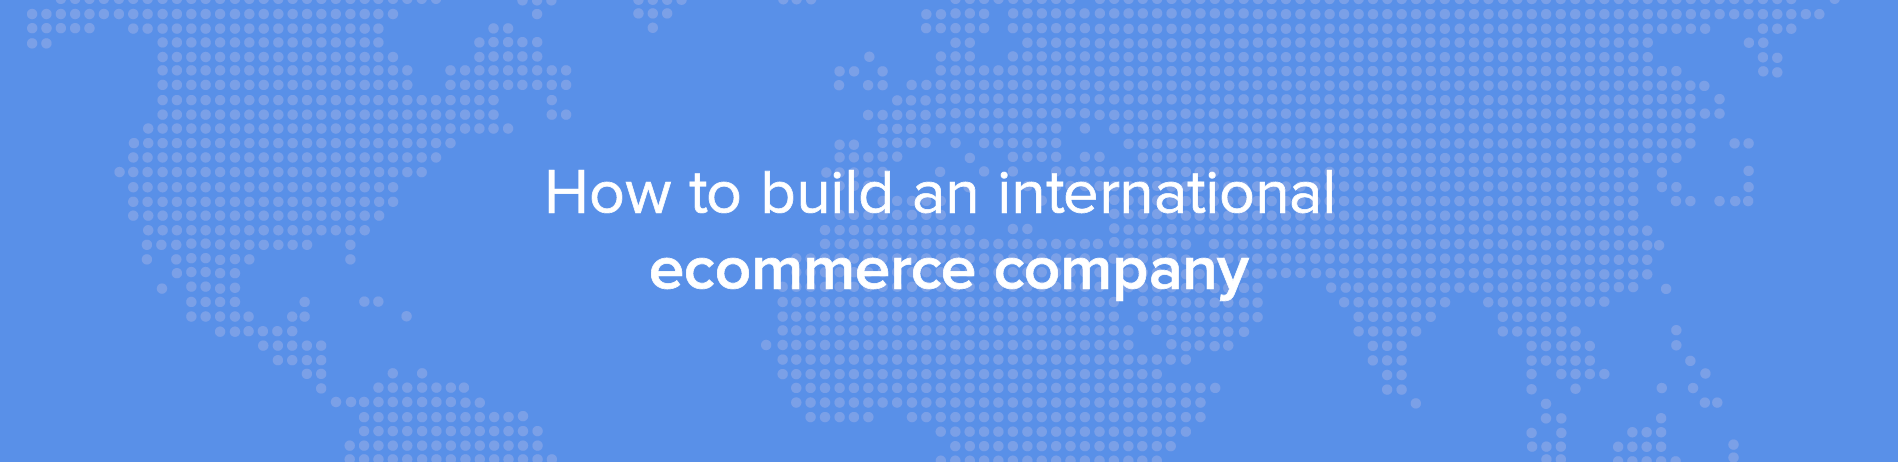 Comment bâtir une entreprise internationale de e-commerce